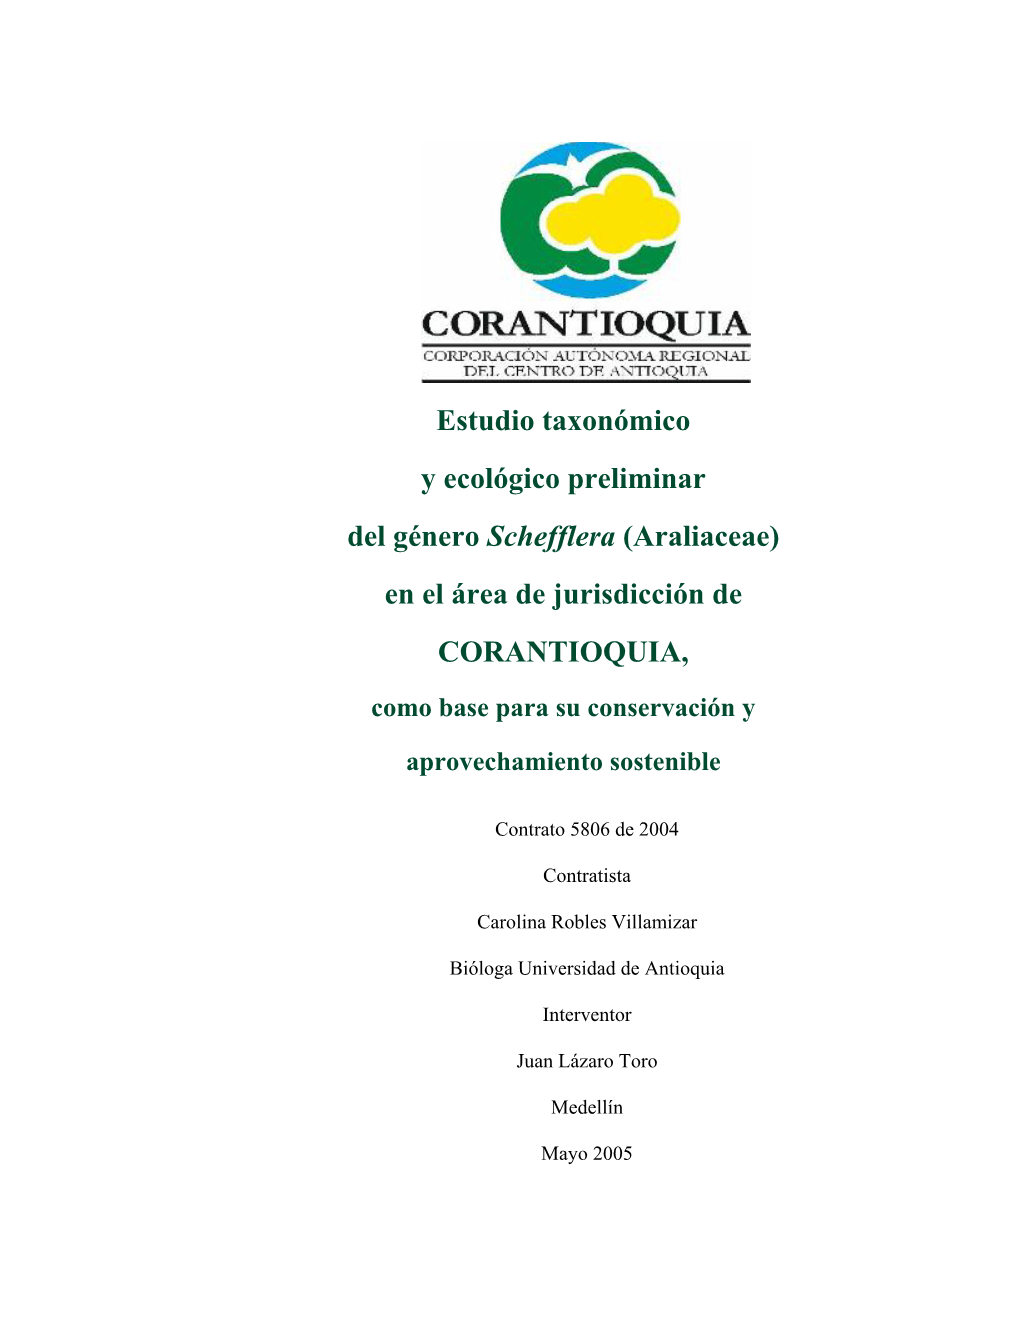 Estudio Taxonómico Y Ecológico Preliminar Del Género Schefflera (Araliaceae) En El Área De Jurisdicción De CORANTIOQUIA